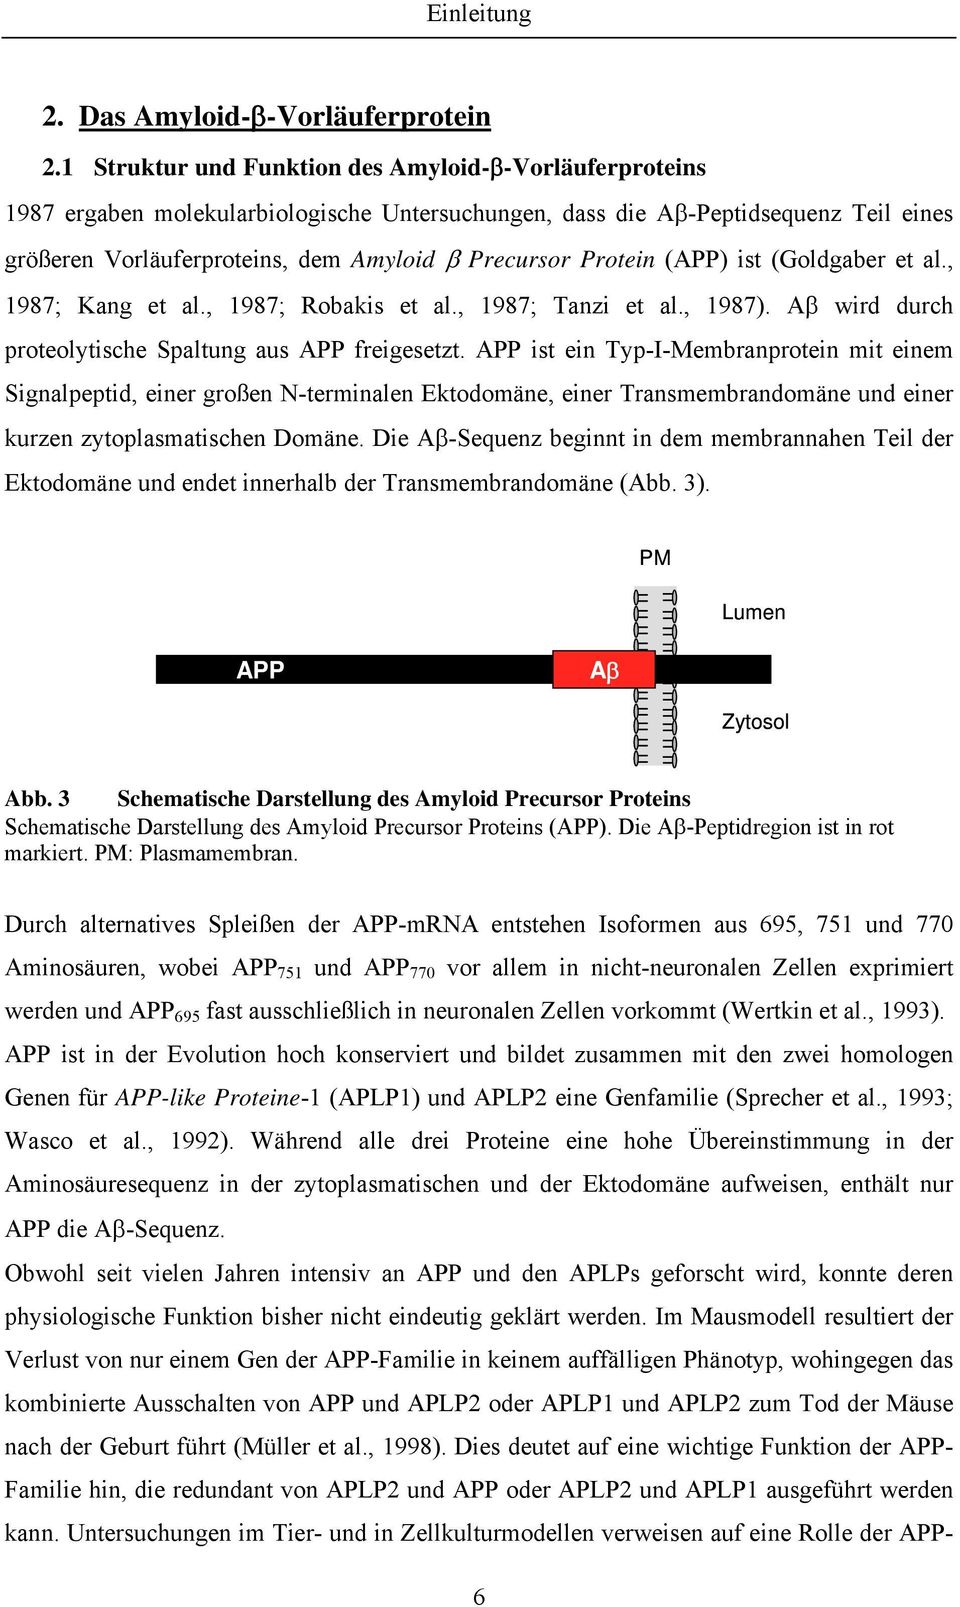 Protein (APP) ist (Goldgaber et al., 1987; Kang et al., 1987; Robakis et al., 1987; Tanzi et al., 1987). Aβ wird durch proteolytische Spaltung aus APP freigesetzt.